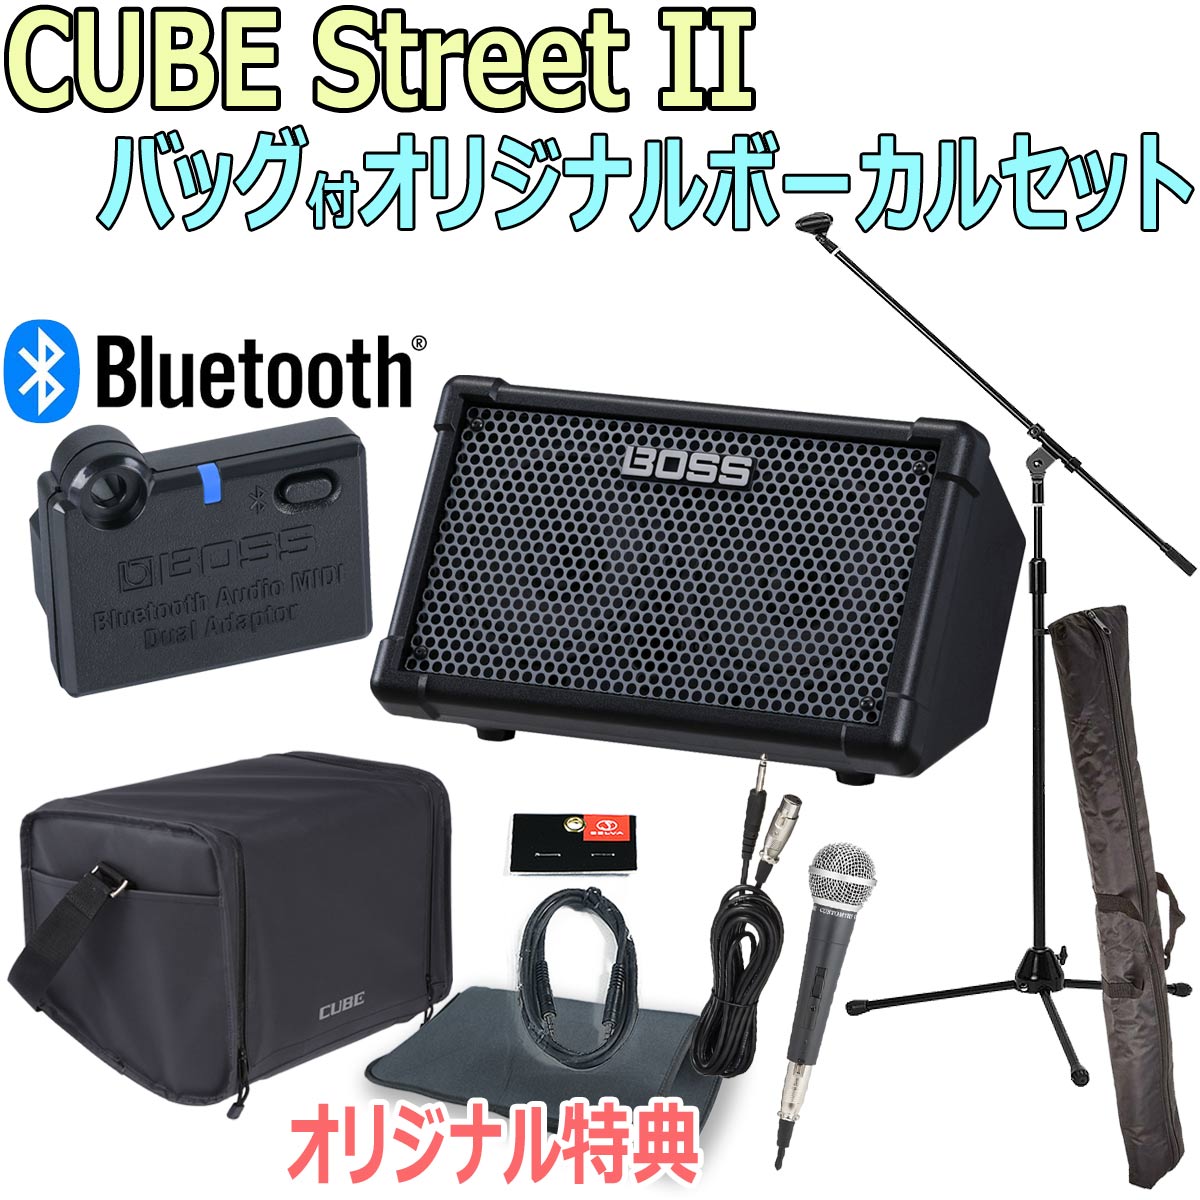 アンプcube streetⅡ  Bluetooth,マイク付き 路上ライブアンプ